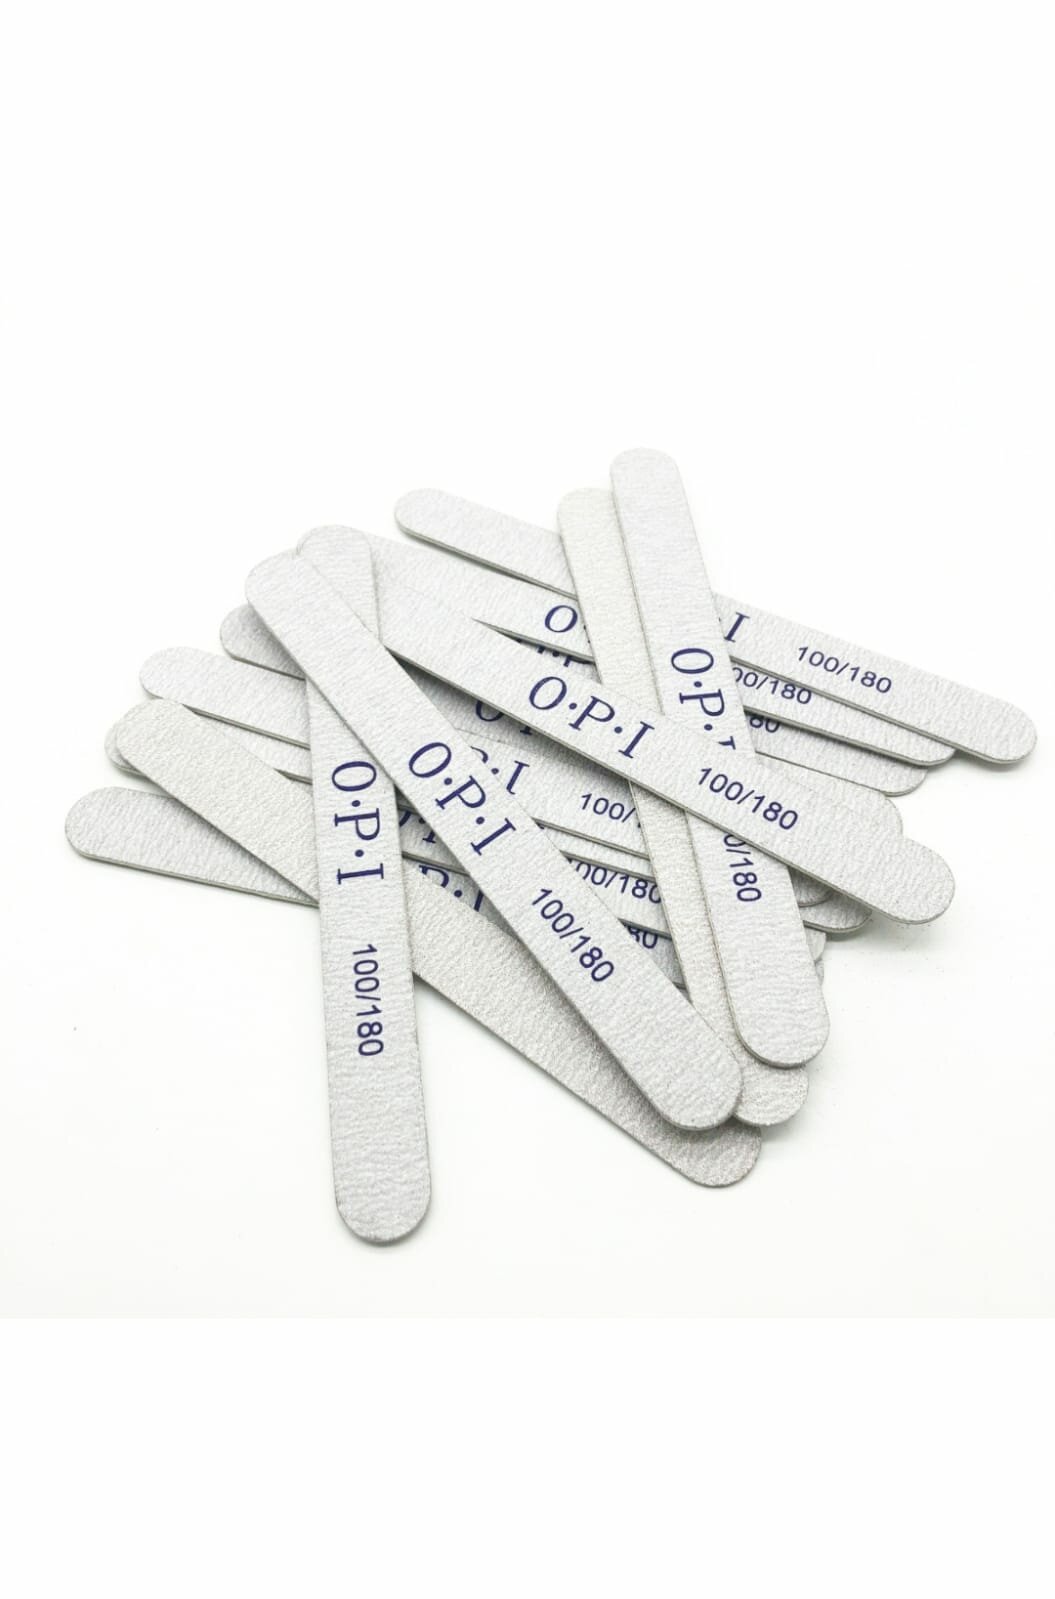 Пилки OPI для ногтей, белые, 10 штук в наборе, зернистость 100/180